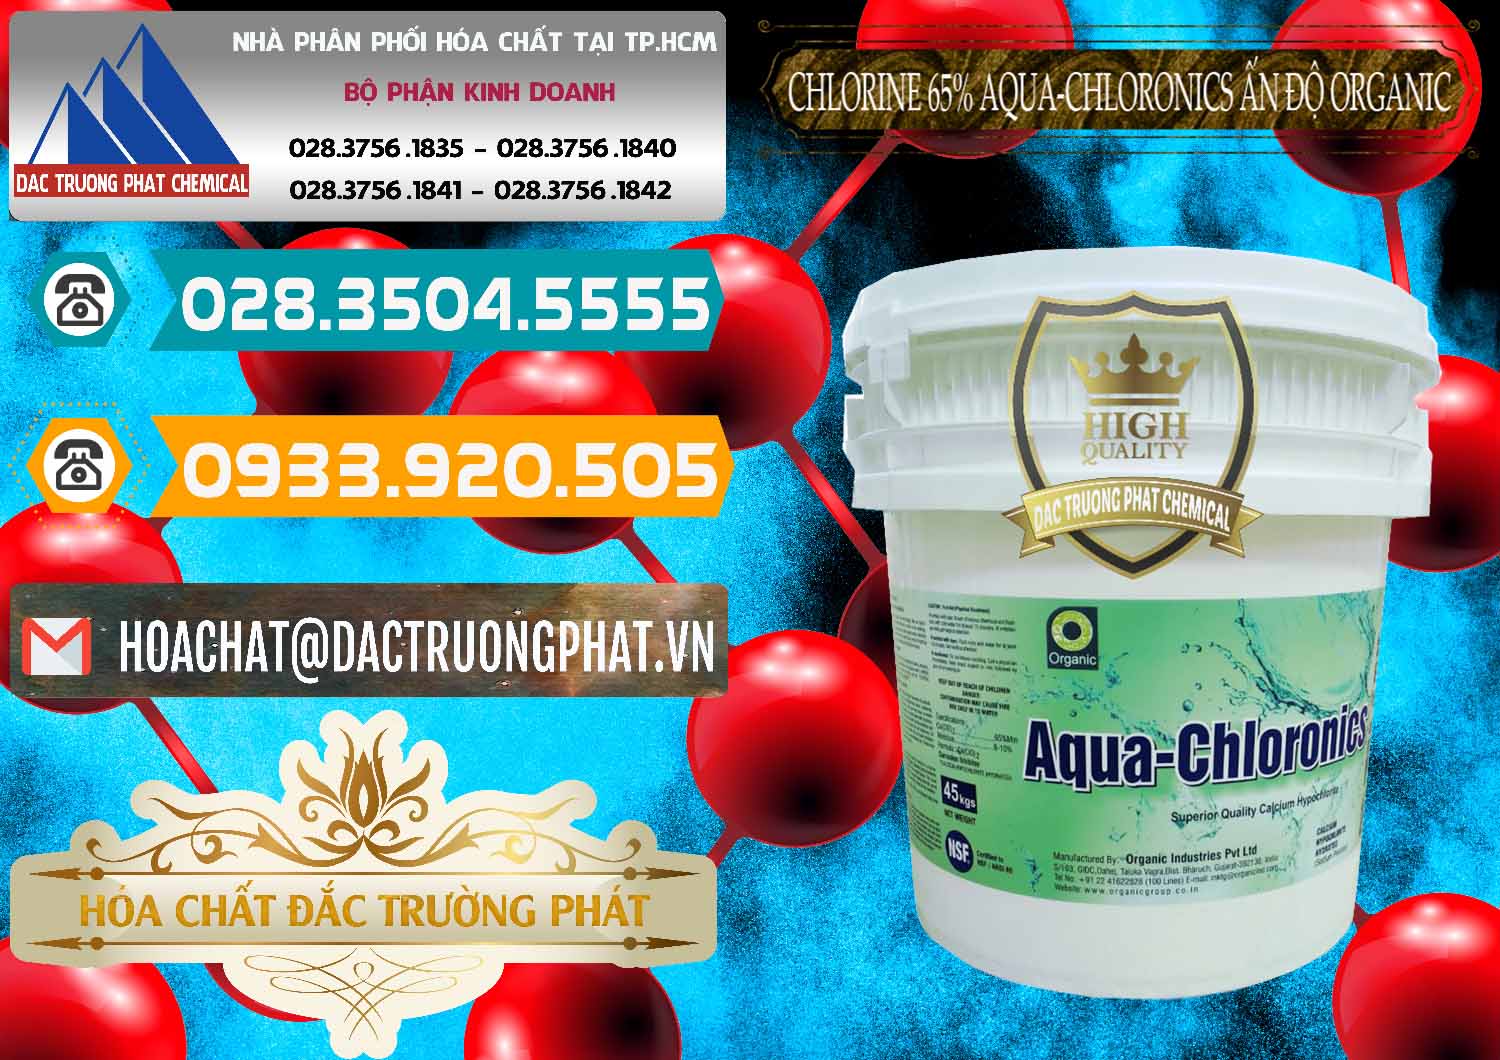 Nơi chuyên bán ( phân phối ) Chlorine – Clorin 65% Aqua-Chloronics Ấn Độ Organic India - 0210 - Phân phối _ nhập khẩu hóa chất tại TP.HCM - congtyhoachat.vn